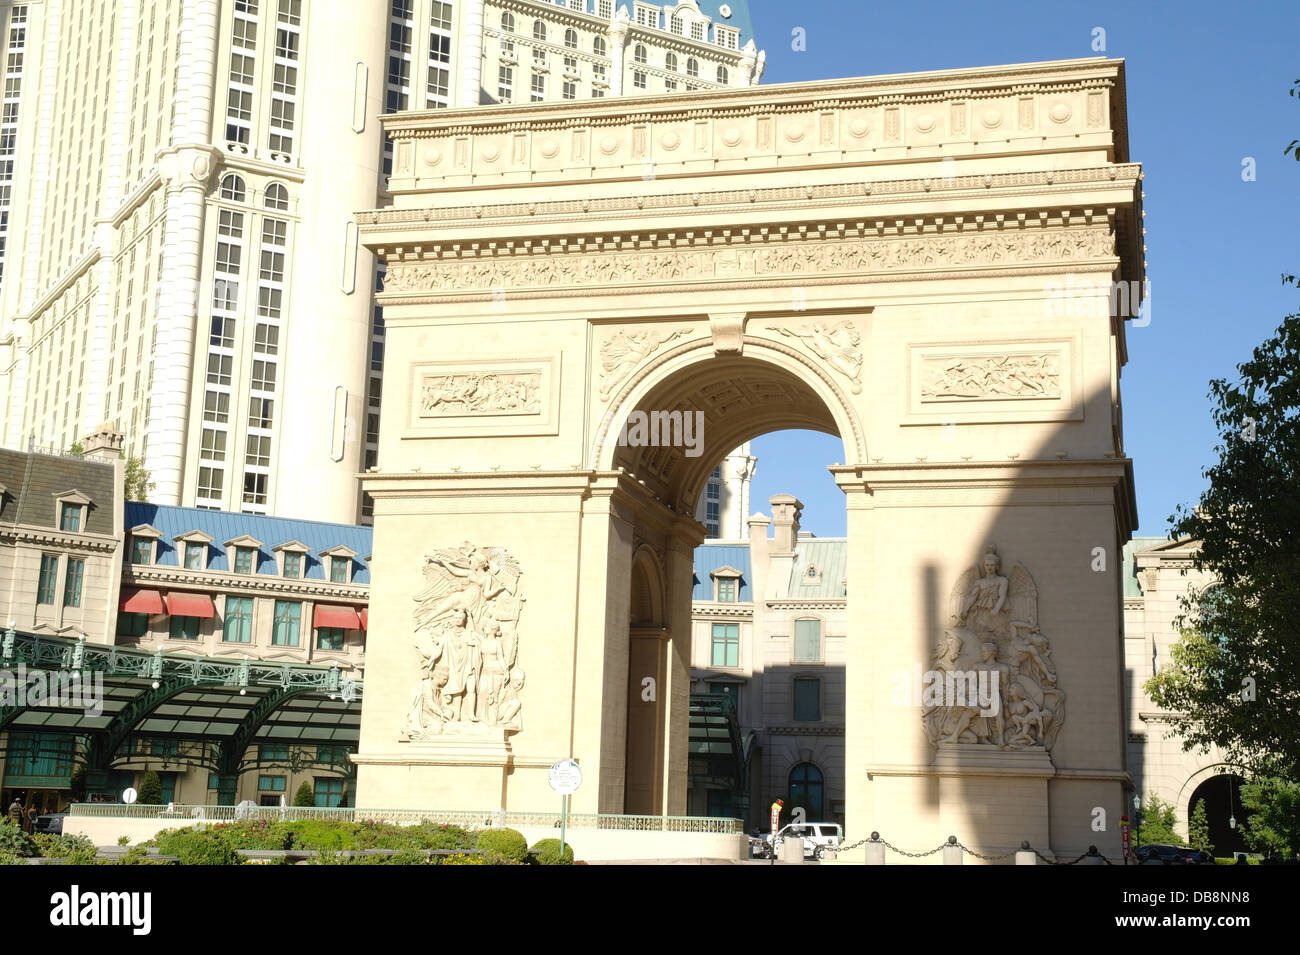 Le Paris Las Vegas Hotel and Casino, réplique de la Tour Eiffel et l'Arc de  Triomphe de l'étoile Photo Stock - Alamy